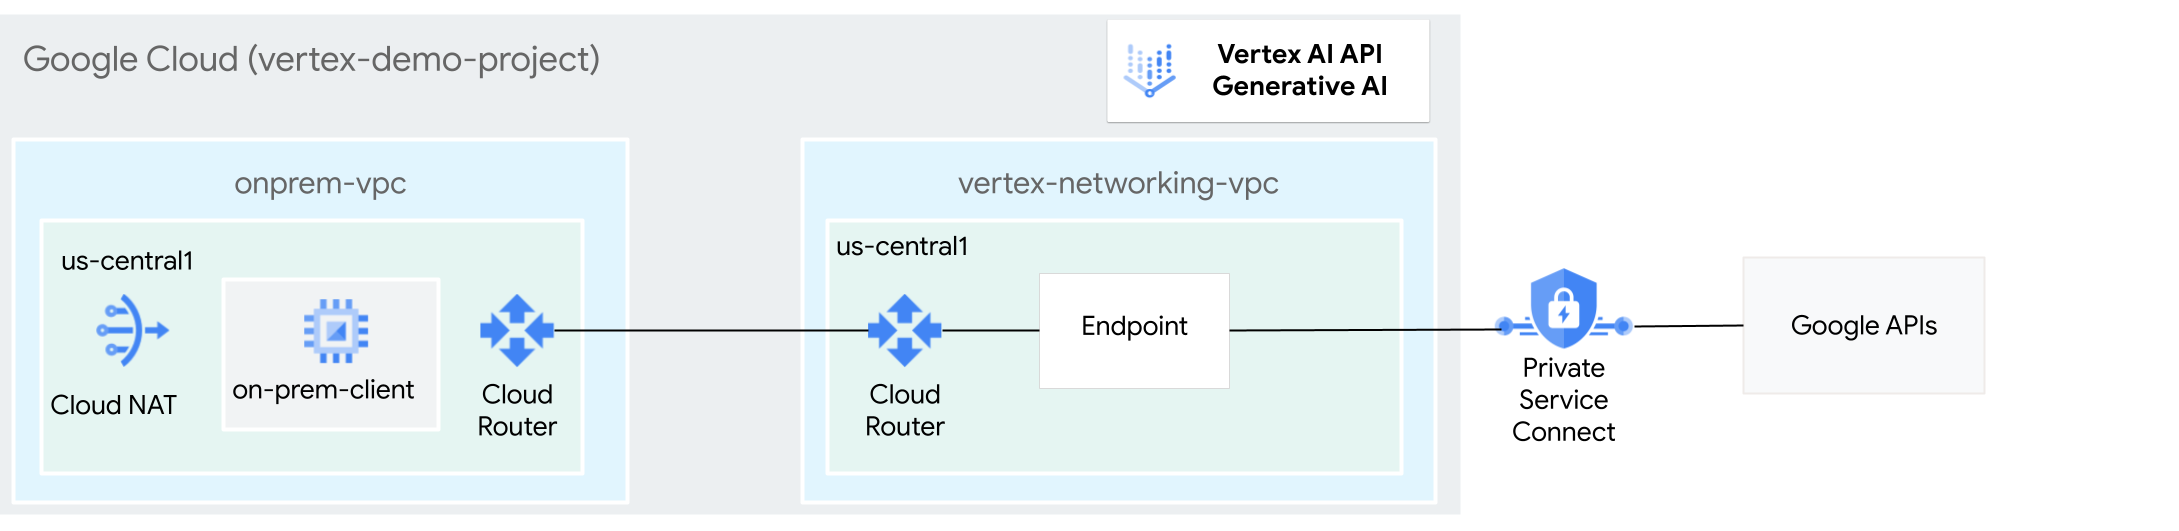 Diagramm: Architektur der Verwendung von Private Service Connect für den Zugriff auf Generative AI auf Vertex AI